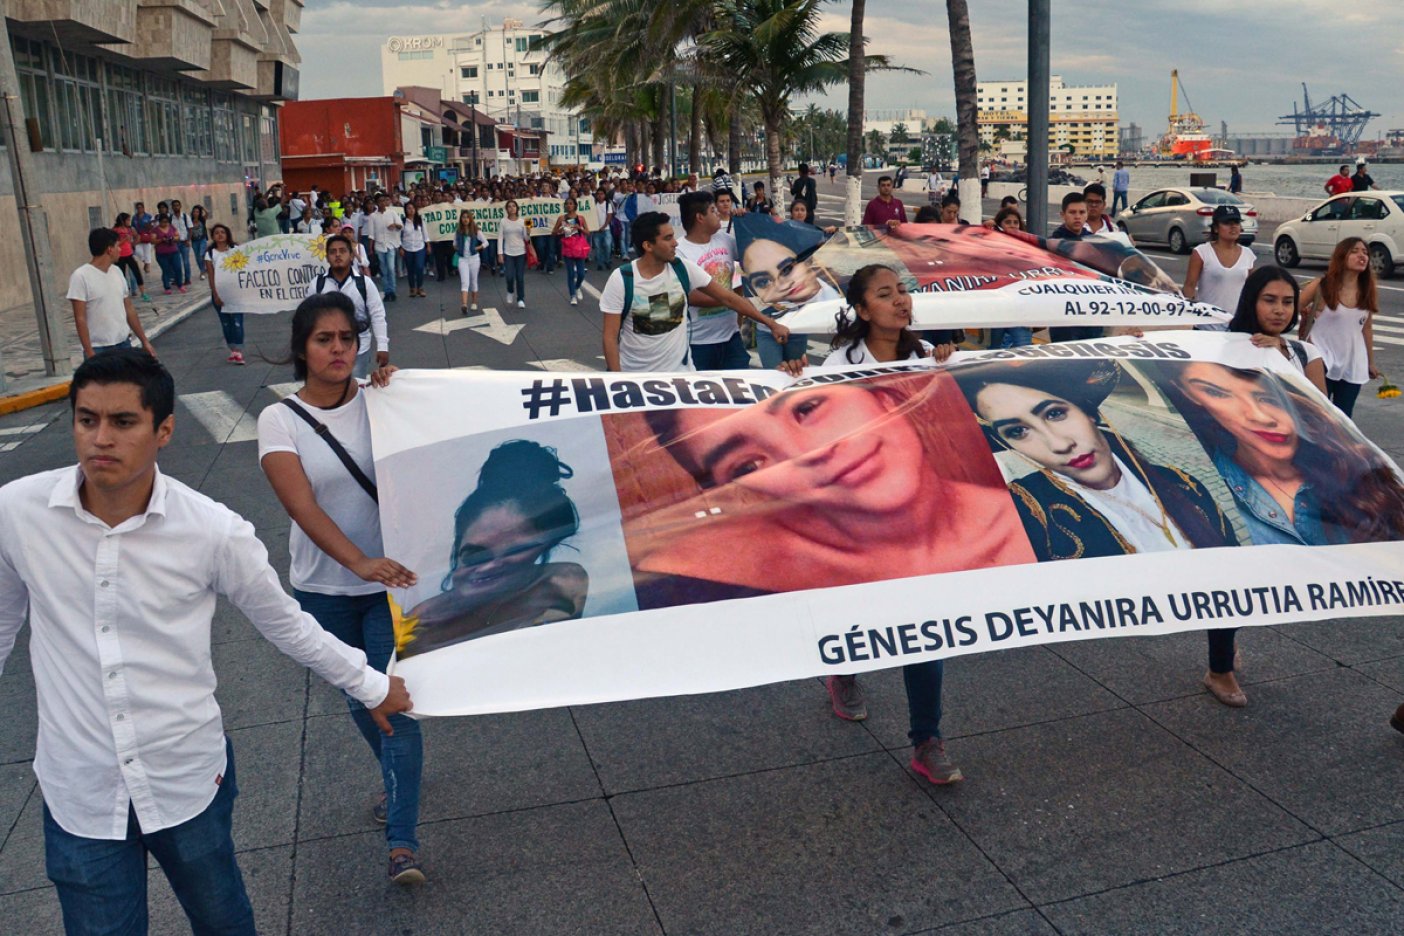  Mientras exigían justicia por muerte de Génesis, regidor armaba fiesta en Veracruz